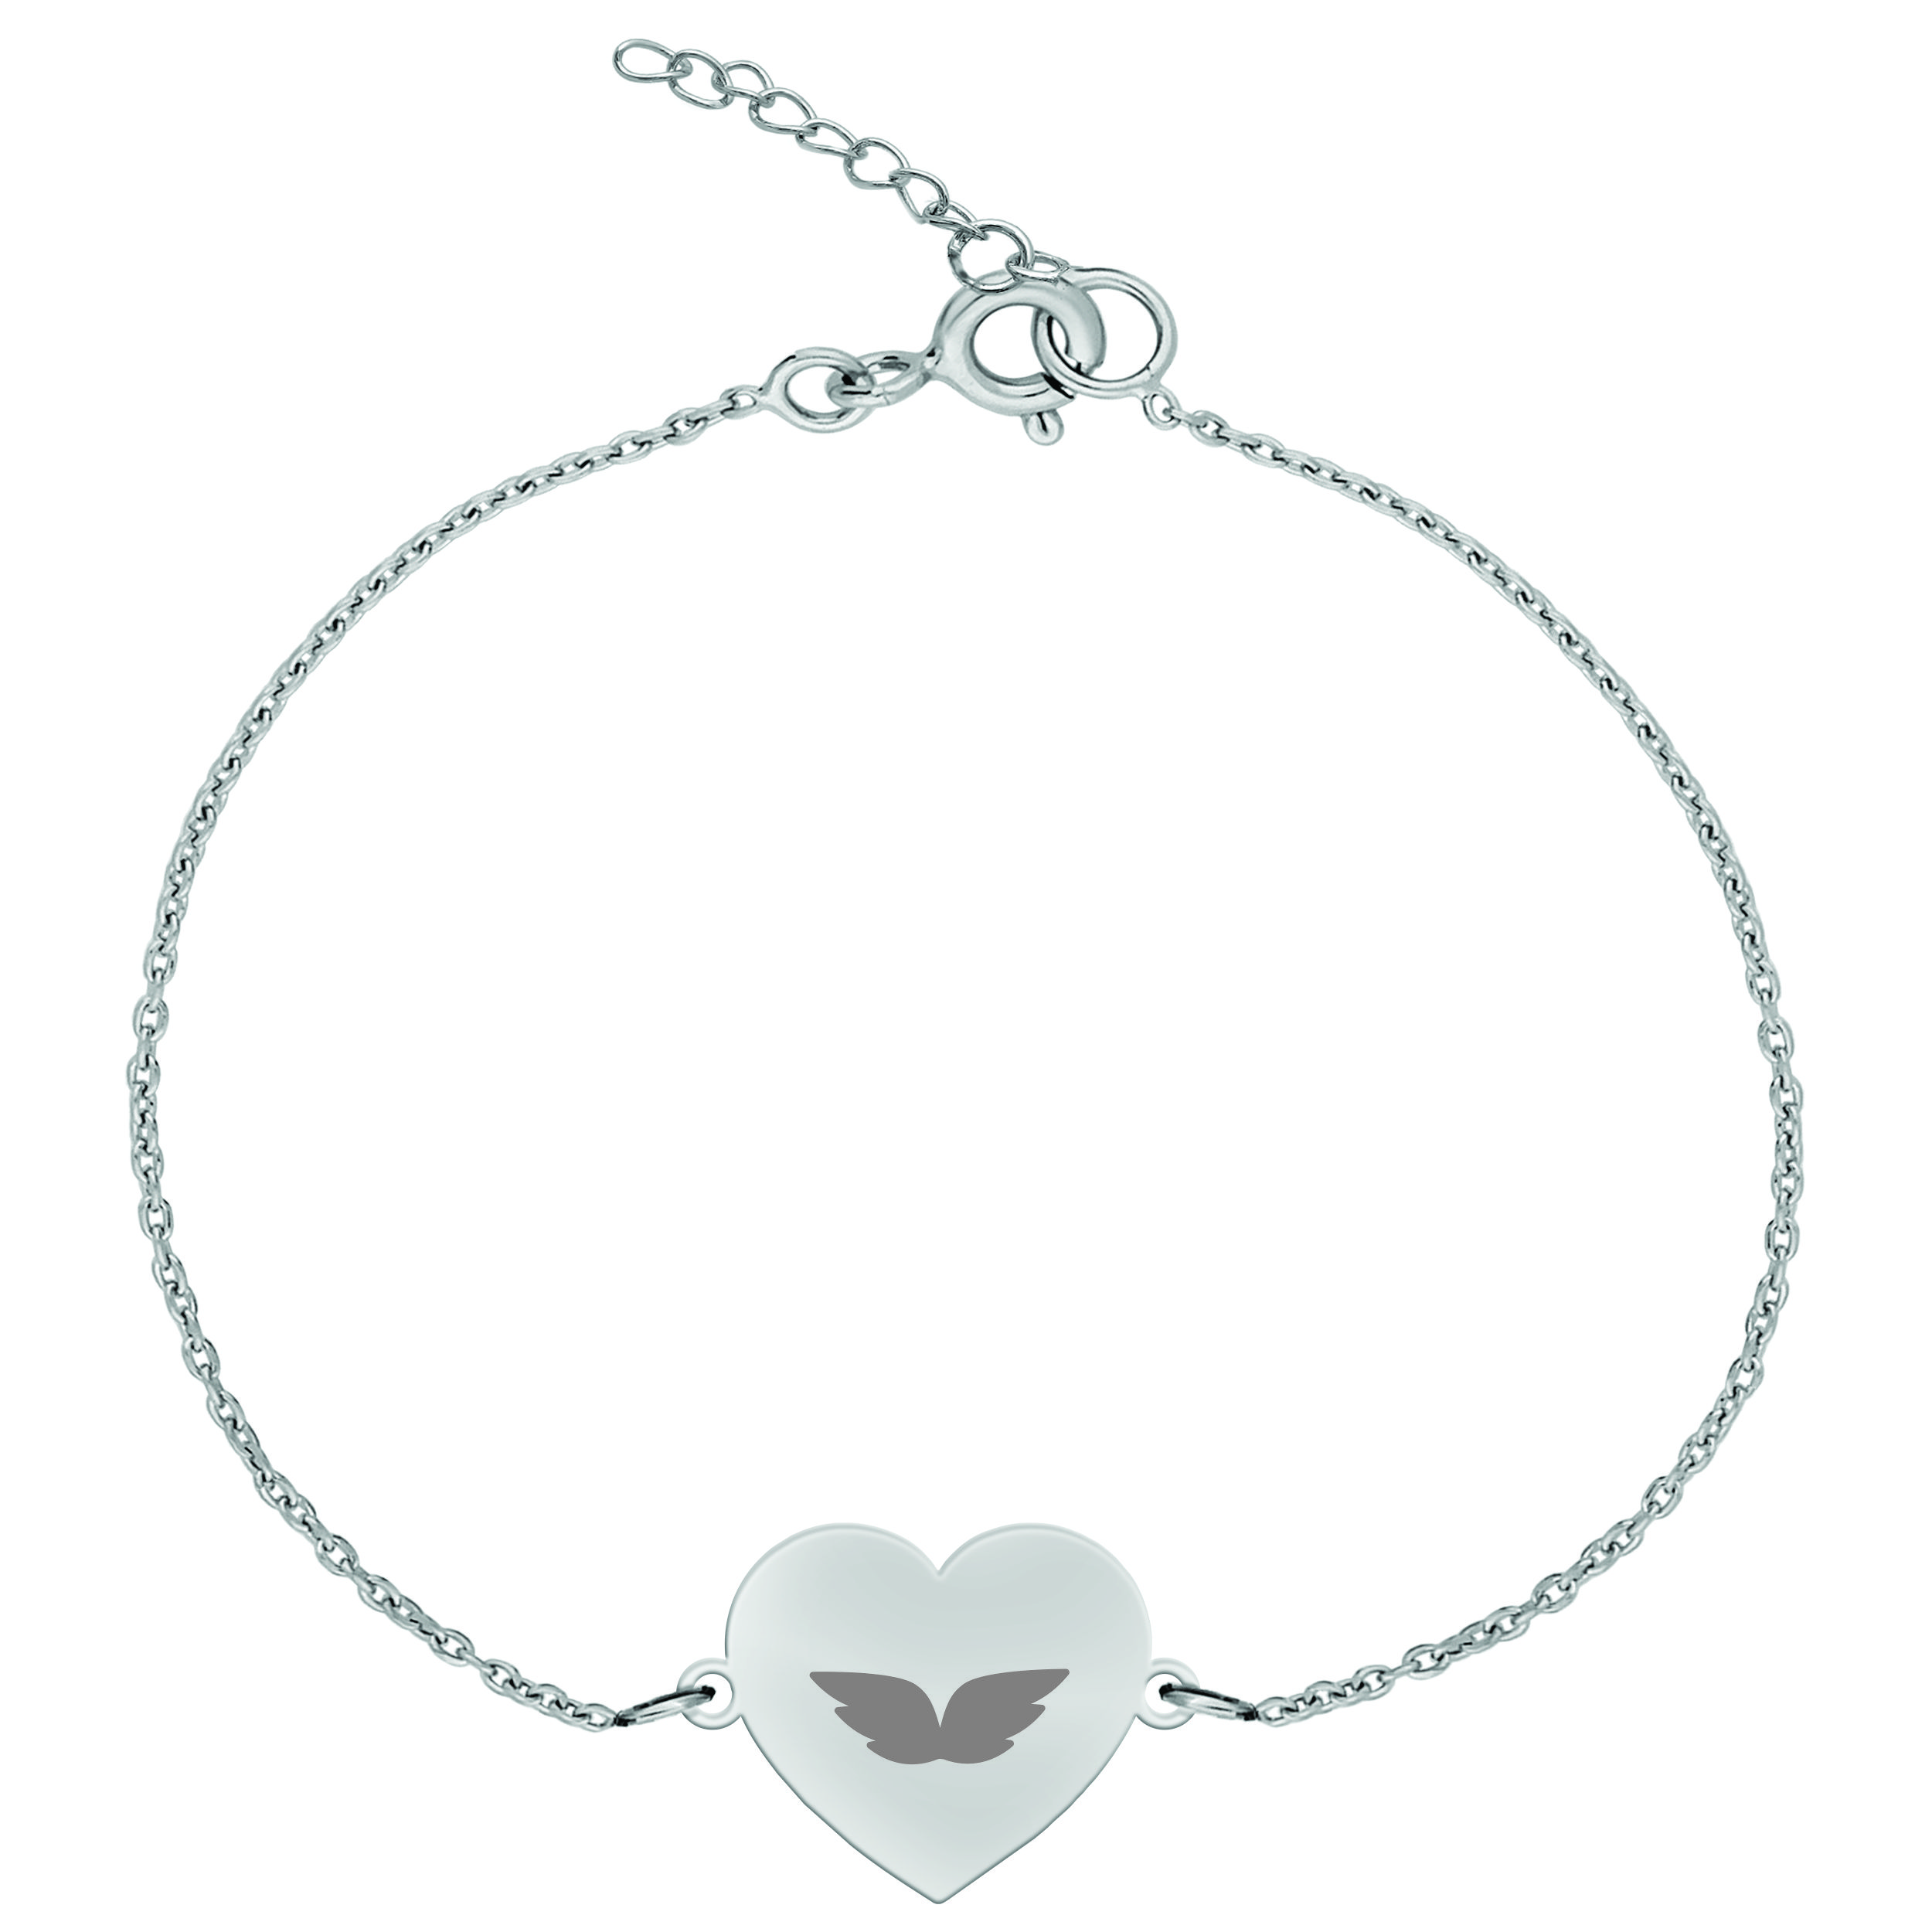 دستبند نقره زنانه ترمه 1 مدل بال فرشته کد DN 1020